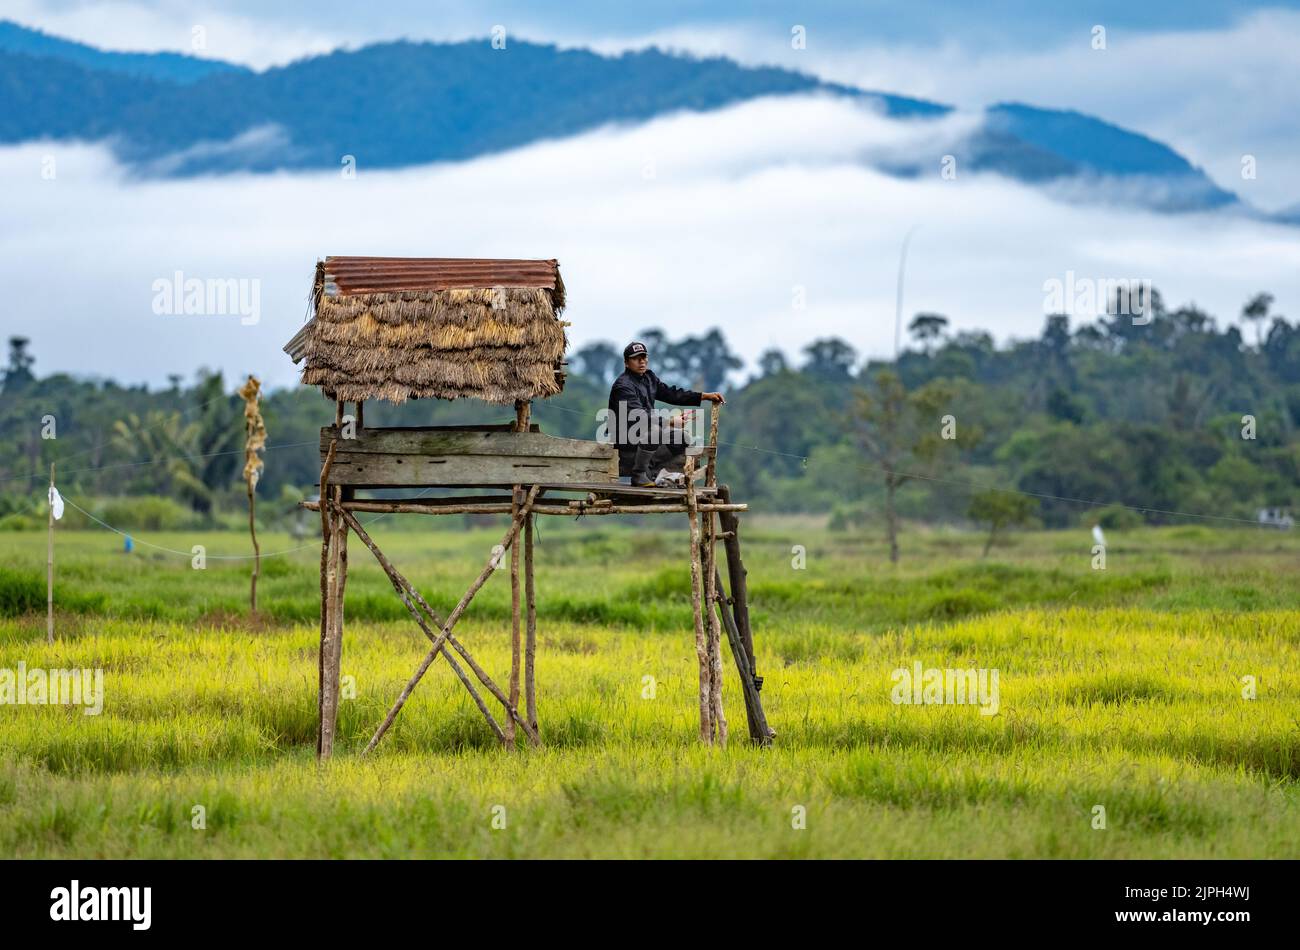 Ein Indonesier, der auf einer Plattform sitzt und mit einem Schleuderschuss Vögel im Reisfeld vertreiben kann. Sulawesi, Indonesien. Stockfoto